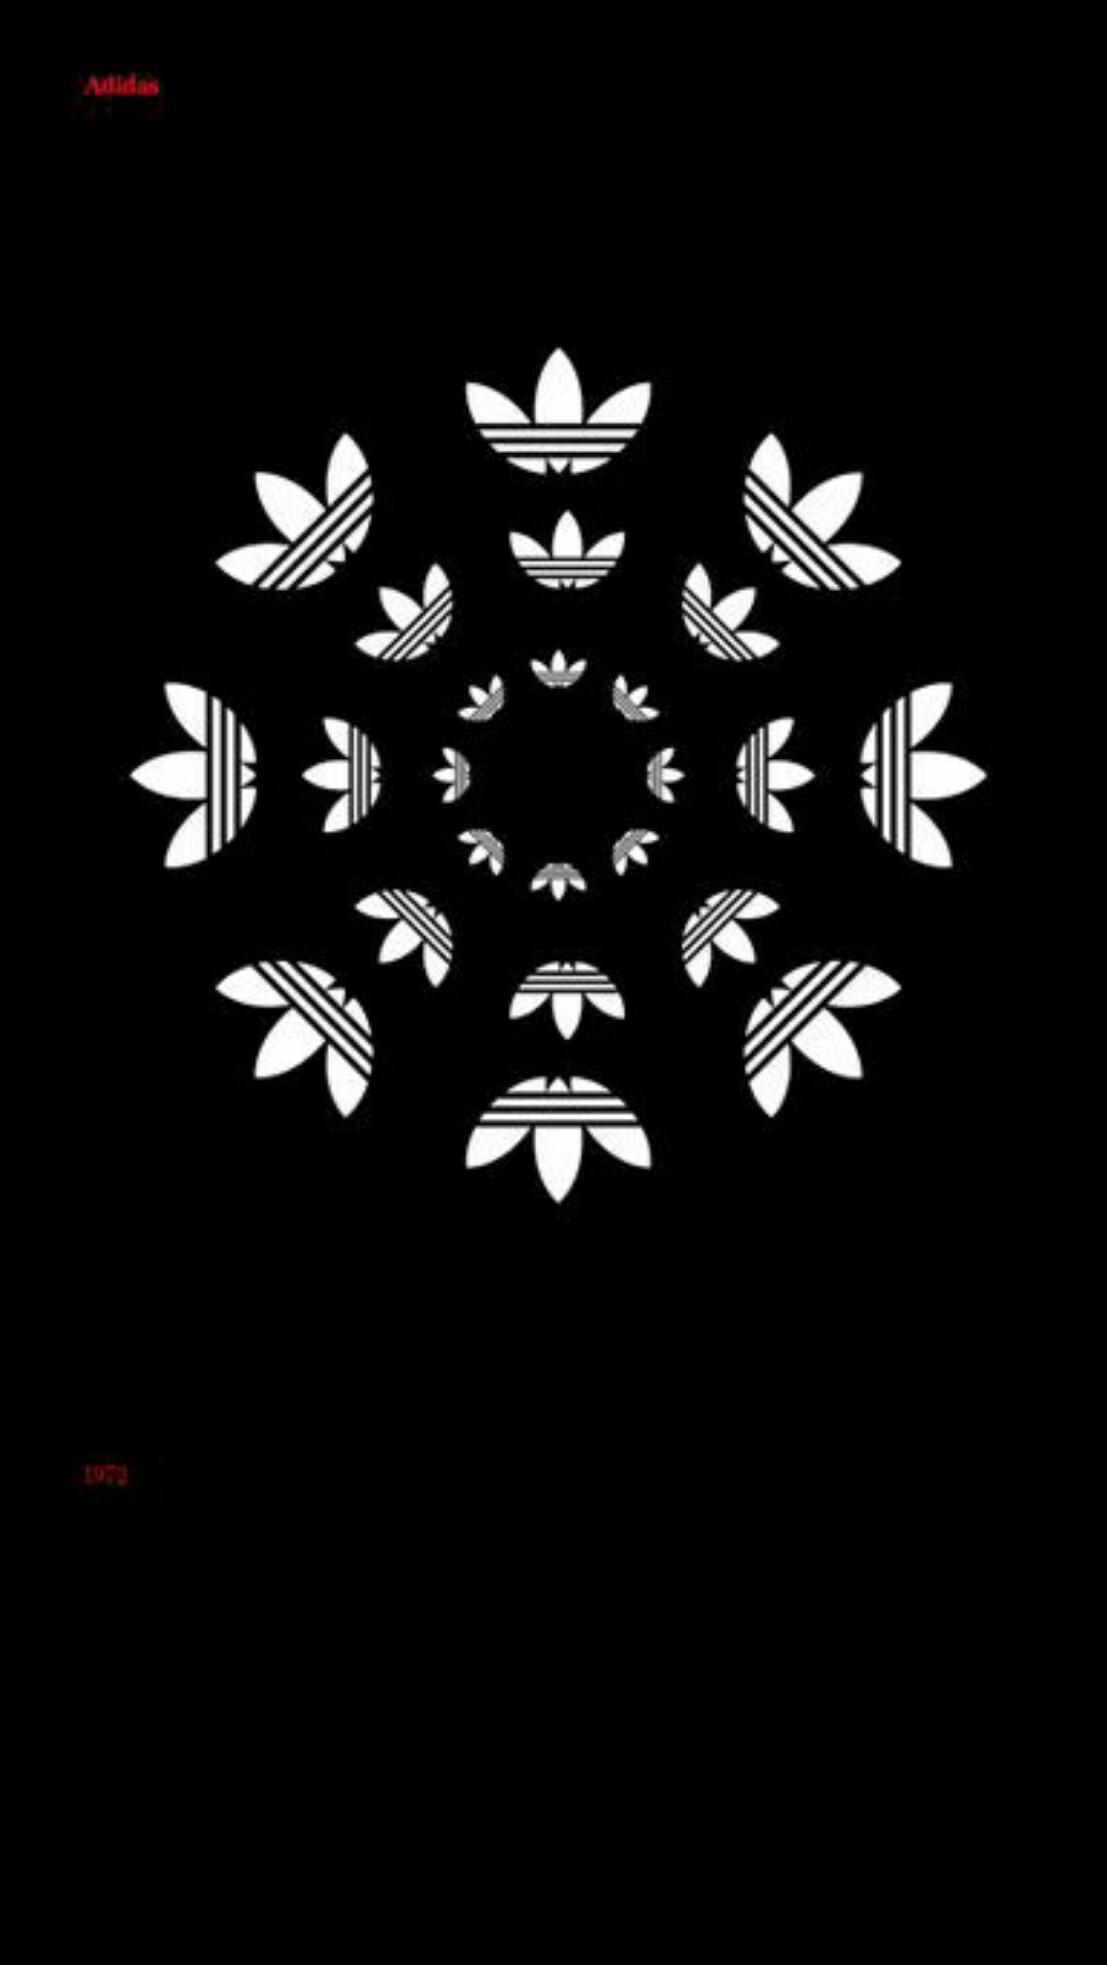 Adidas Camo Logo Iphone Wallpapers